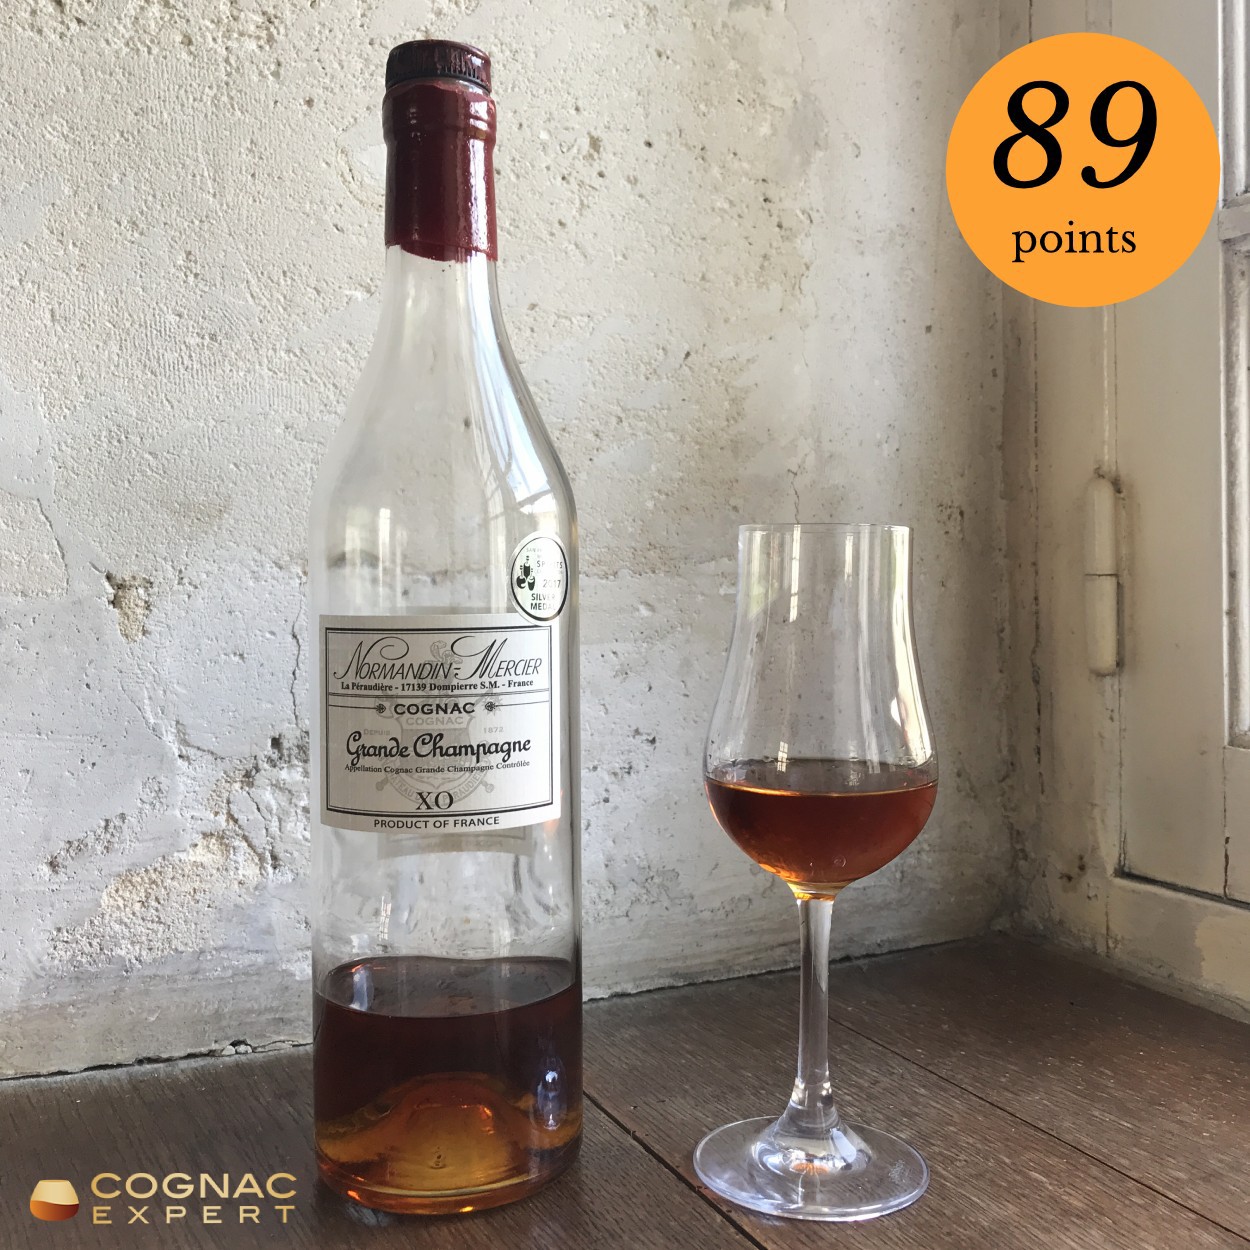 Normandin Mercier XO Cognac and glass